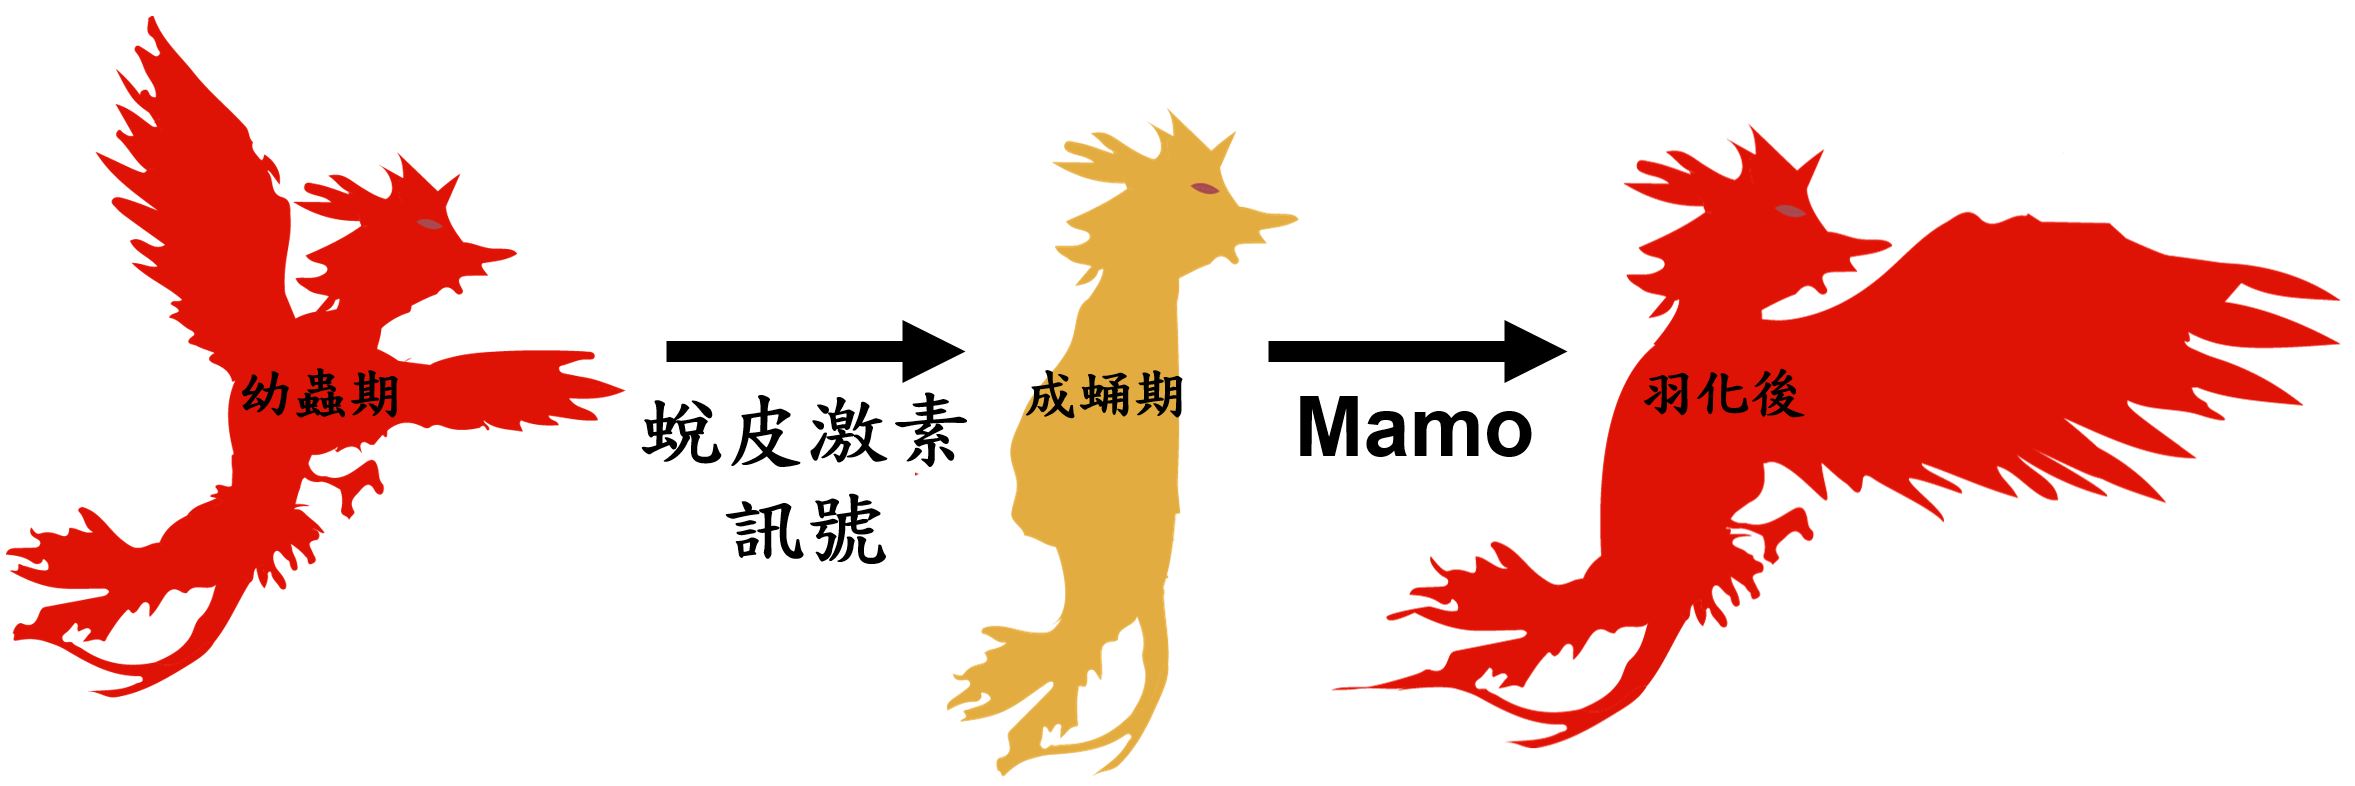 幼蟲期→蛻皮激素訊號→成蛹期→Mamo→羽化後(詳述如內文)